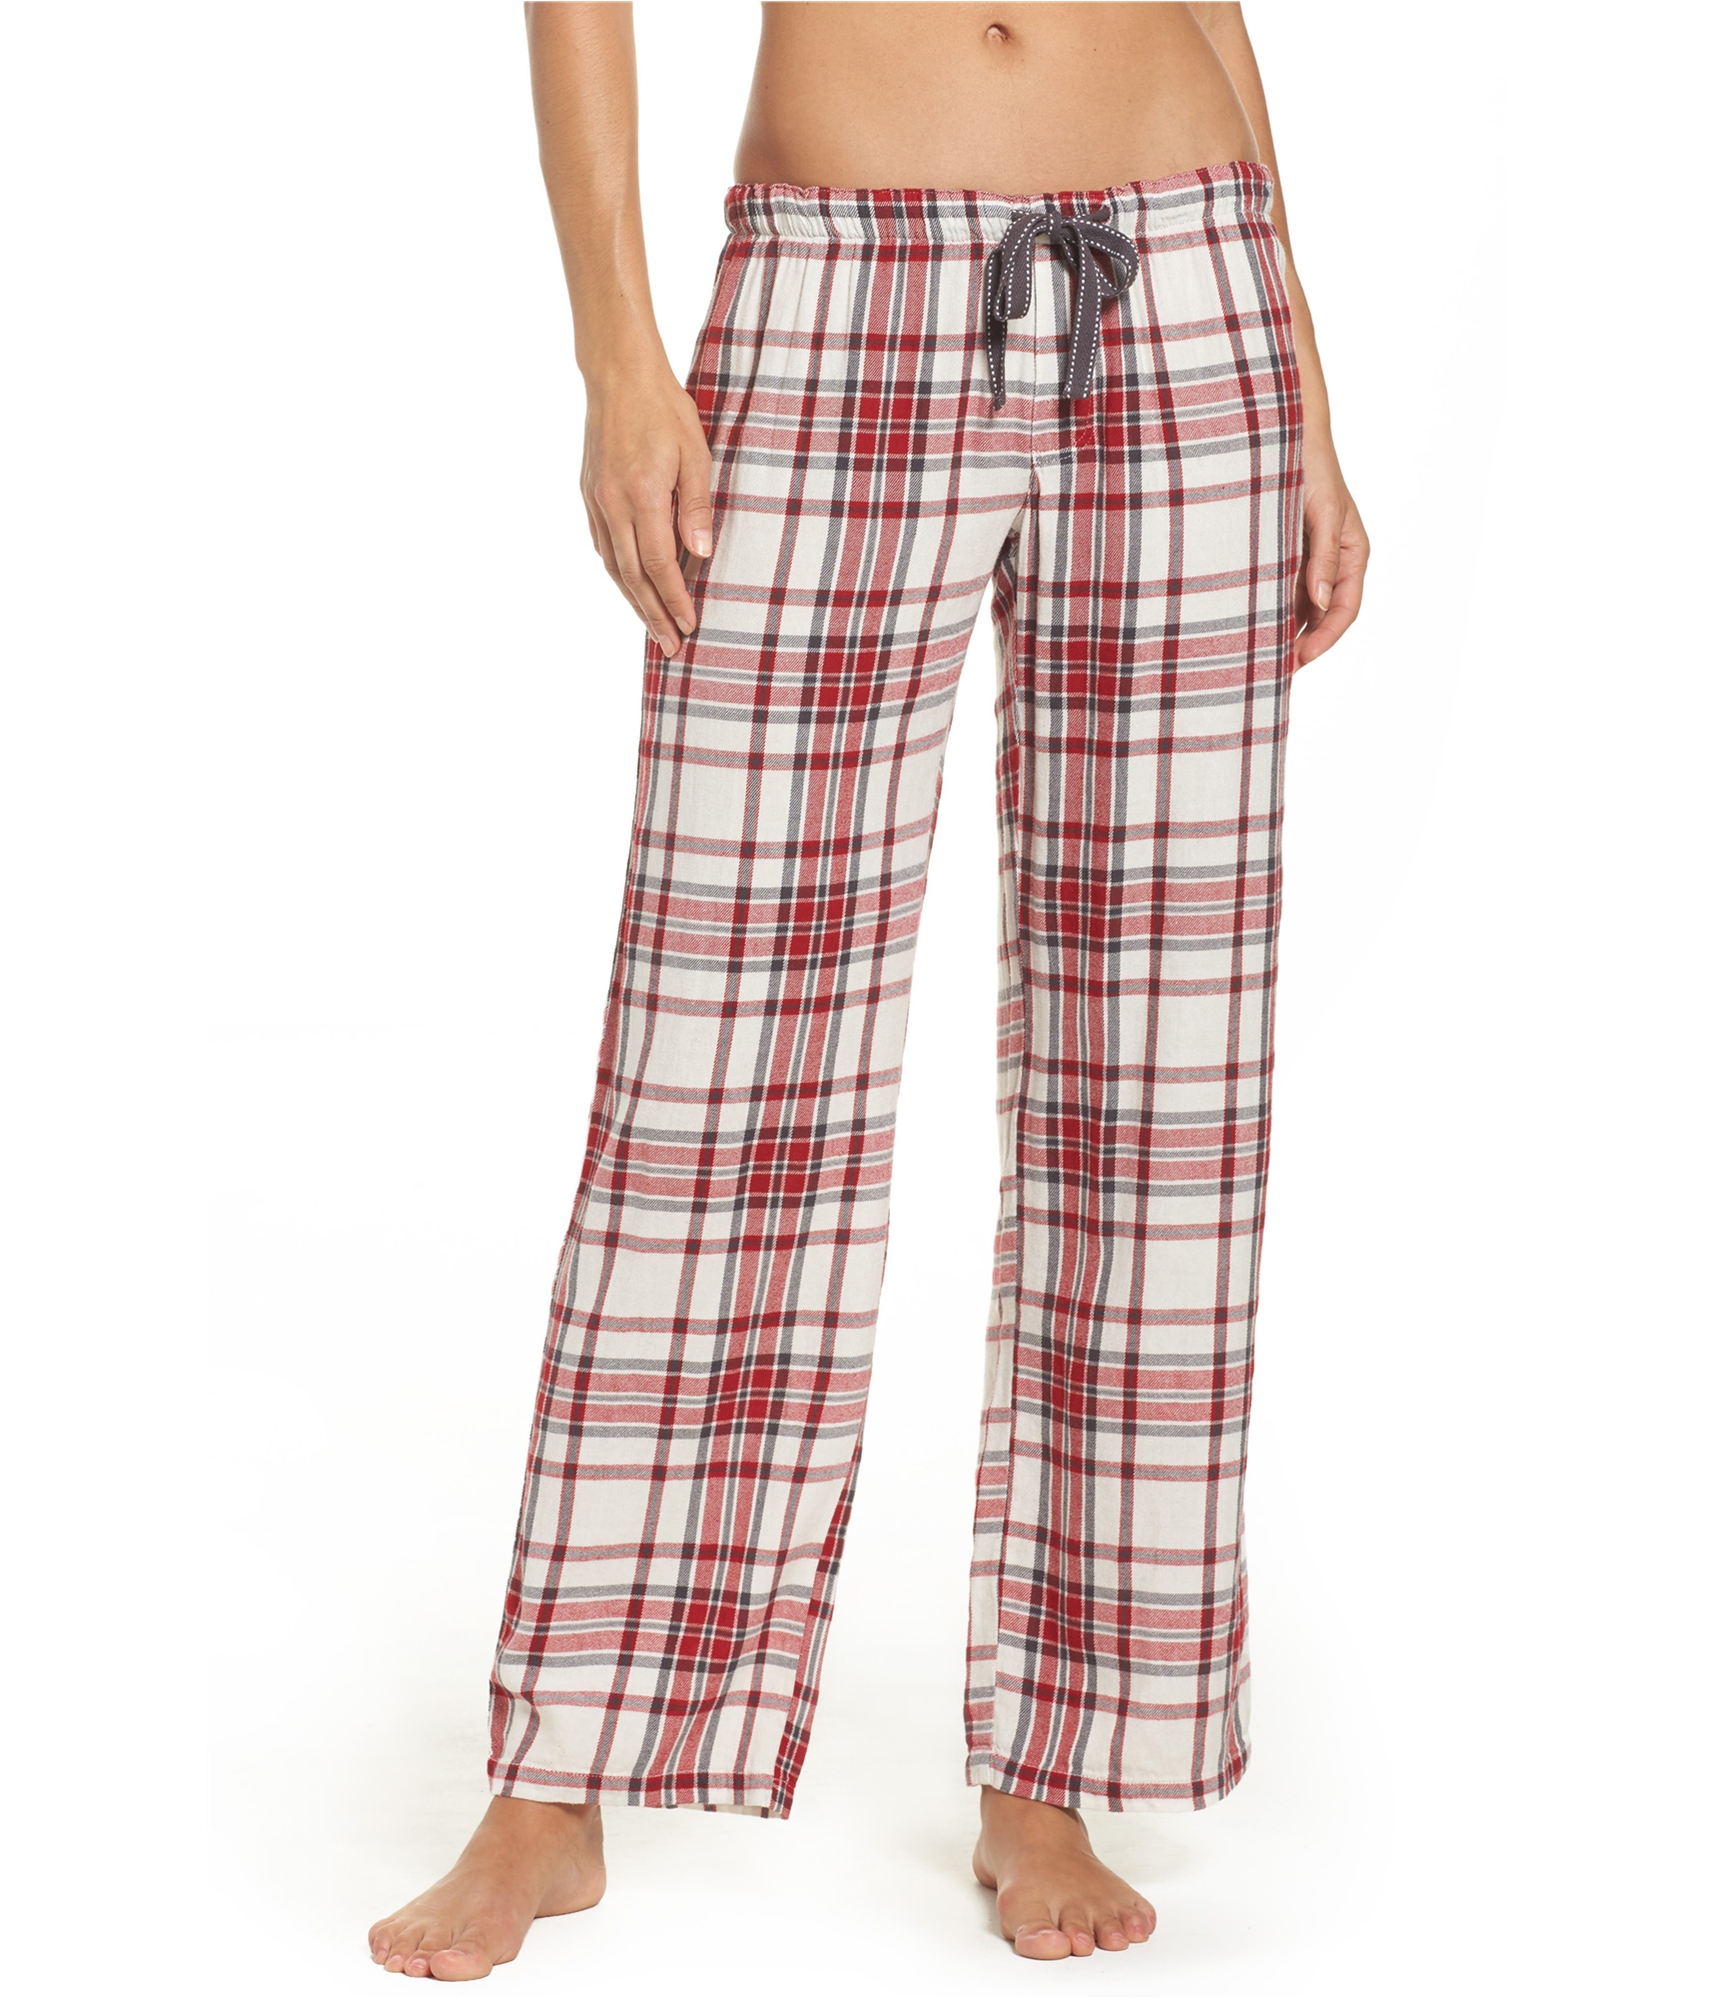 P.J. Salvage Womens Plaid Pajama Lounge Pants | eBay